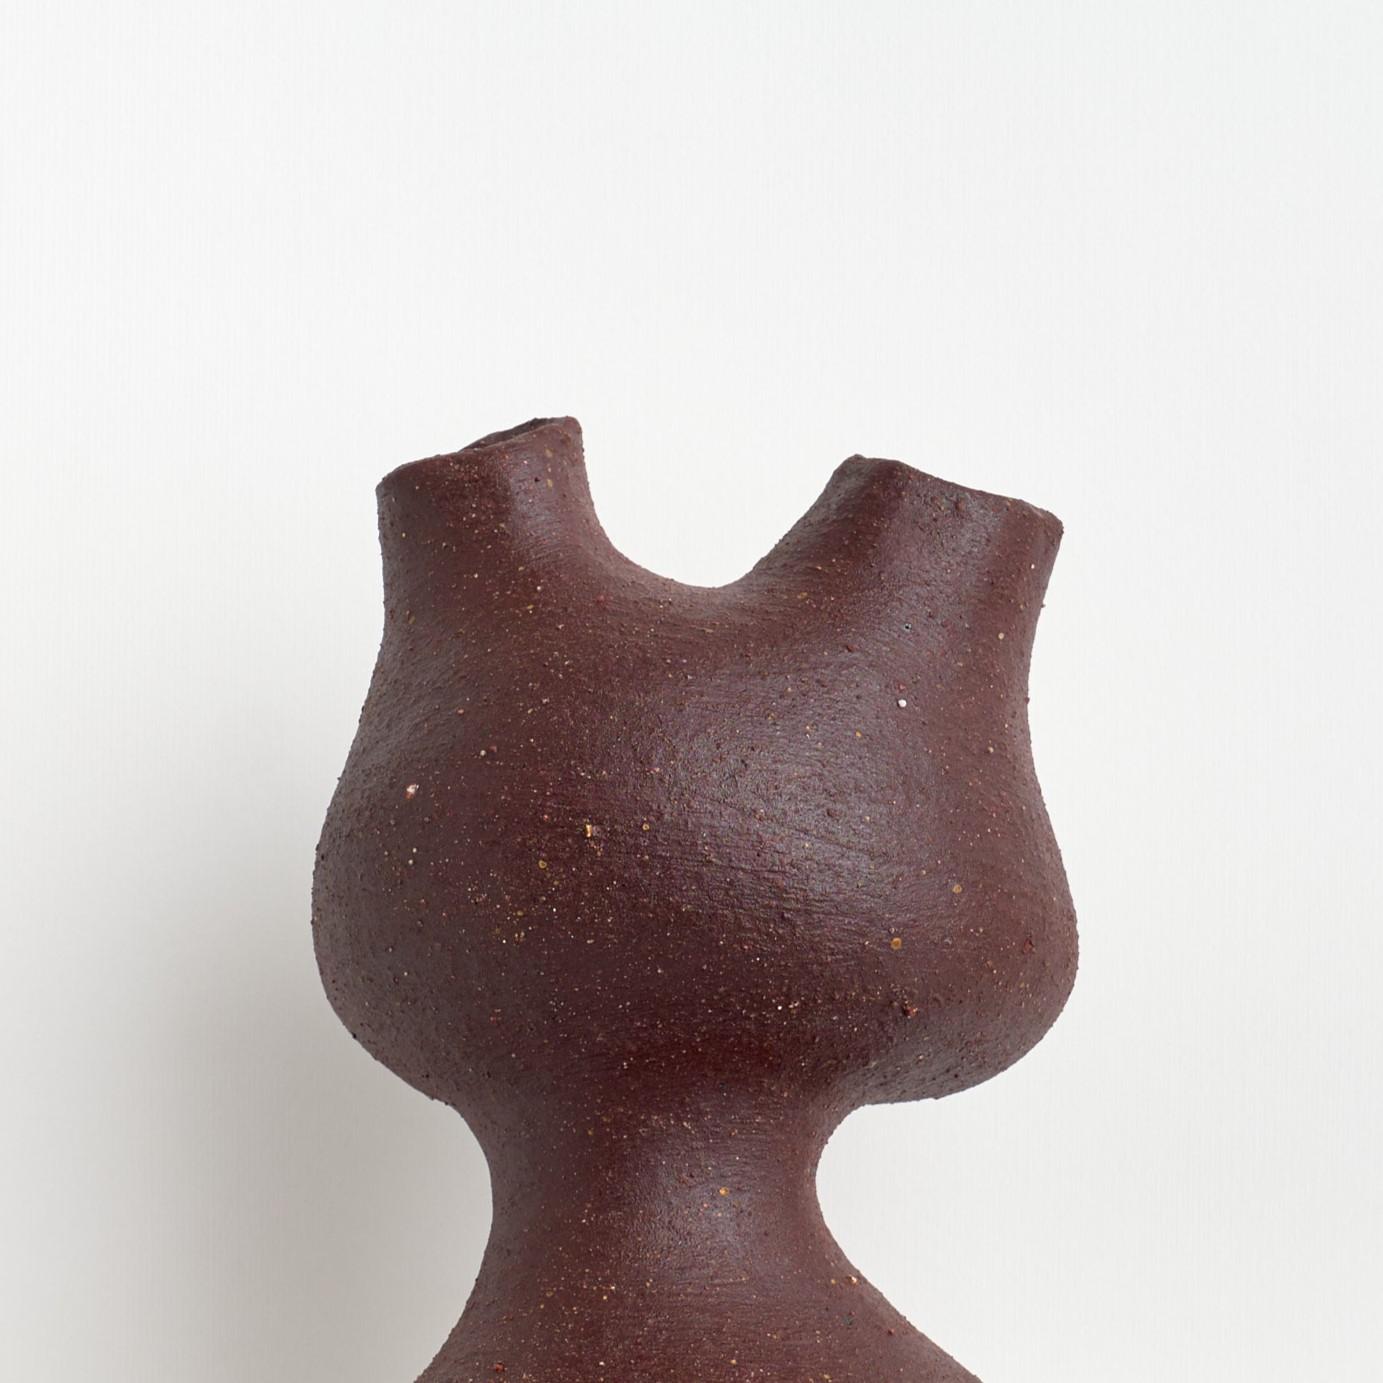 Complemento-Vase von Camila Apaez
Einzigartig
MATERIALIEN: Steingut
Abmessungen: ⌀ 17 x H 27 cm


Ila Ceramica ist aus einem Prozess der inneren Suche entstanden, in dem die Keramik zu einem Raum für Präsenz, Stille, Berührung und Geduld wurde.